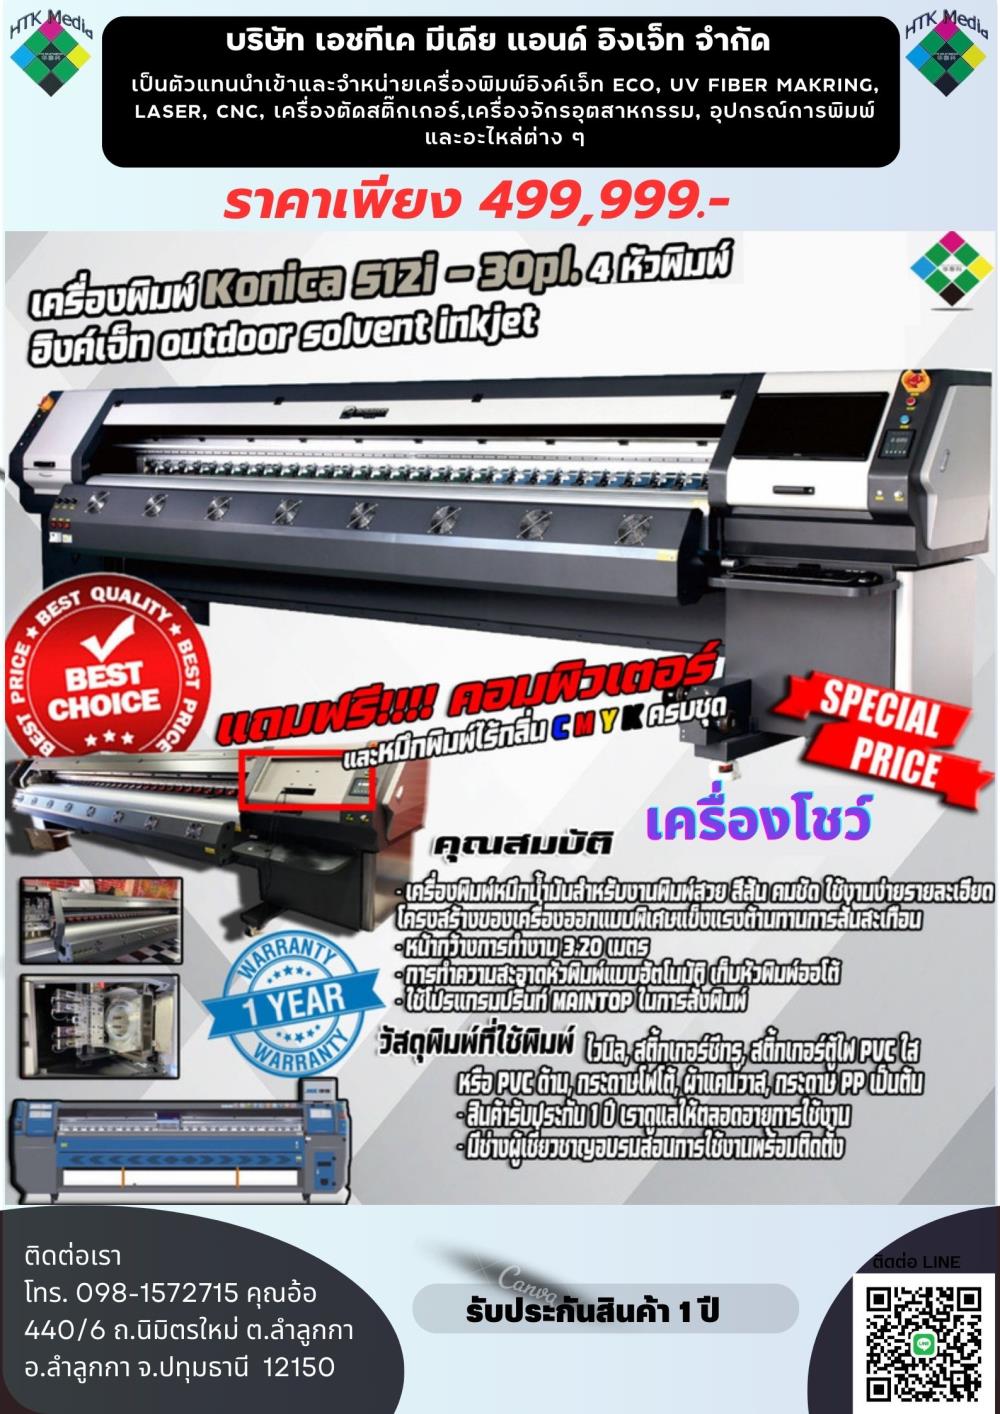 เครื่องพิมพ์ Konica 512i -30pl. 4 หัวพิมพ์,เครื่องพิมพ์อิงเจ็ท,เครื่องพิมพ์ Konica 512i -30pl. 4 หัวพิมพ์,Custom Manufacturing and Fabricating/Custom Manufacturing